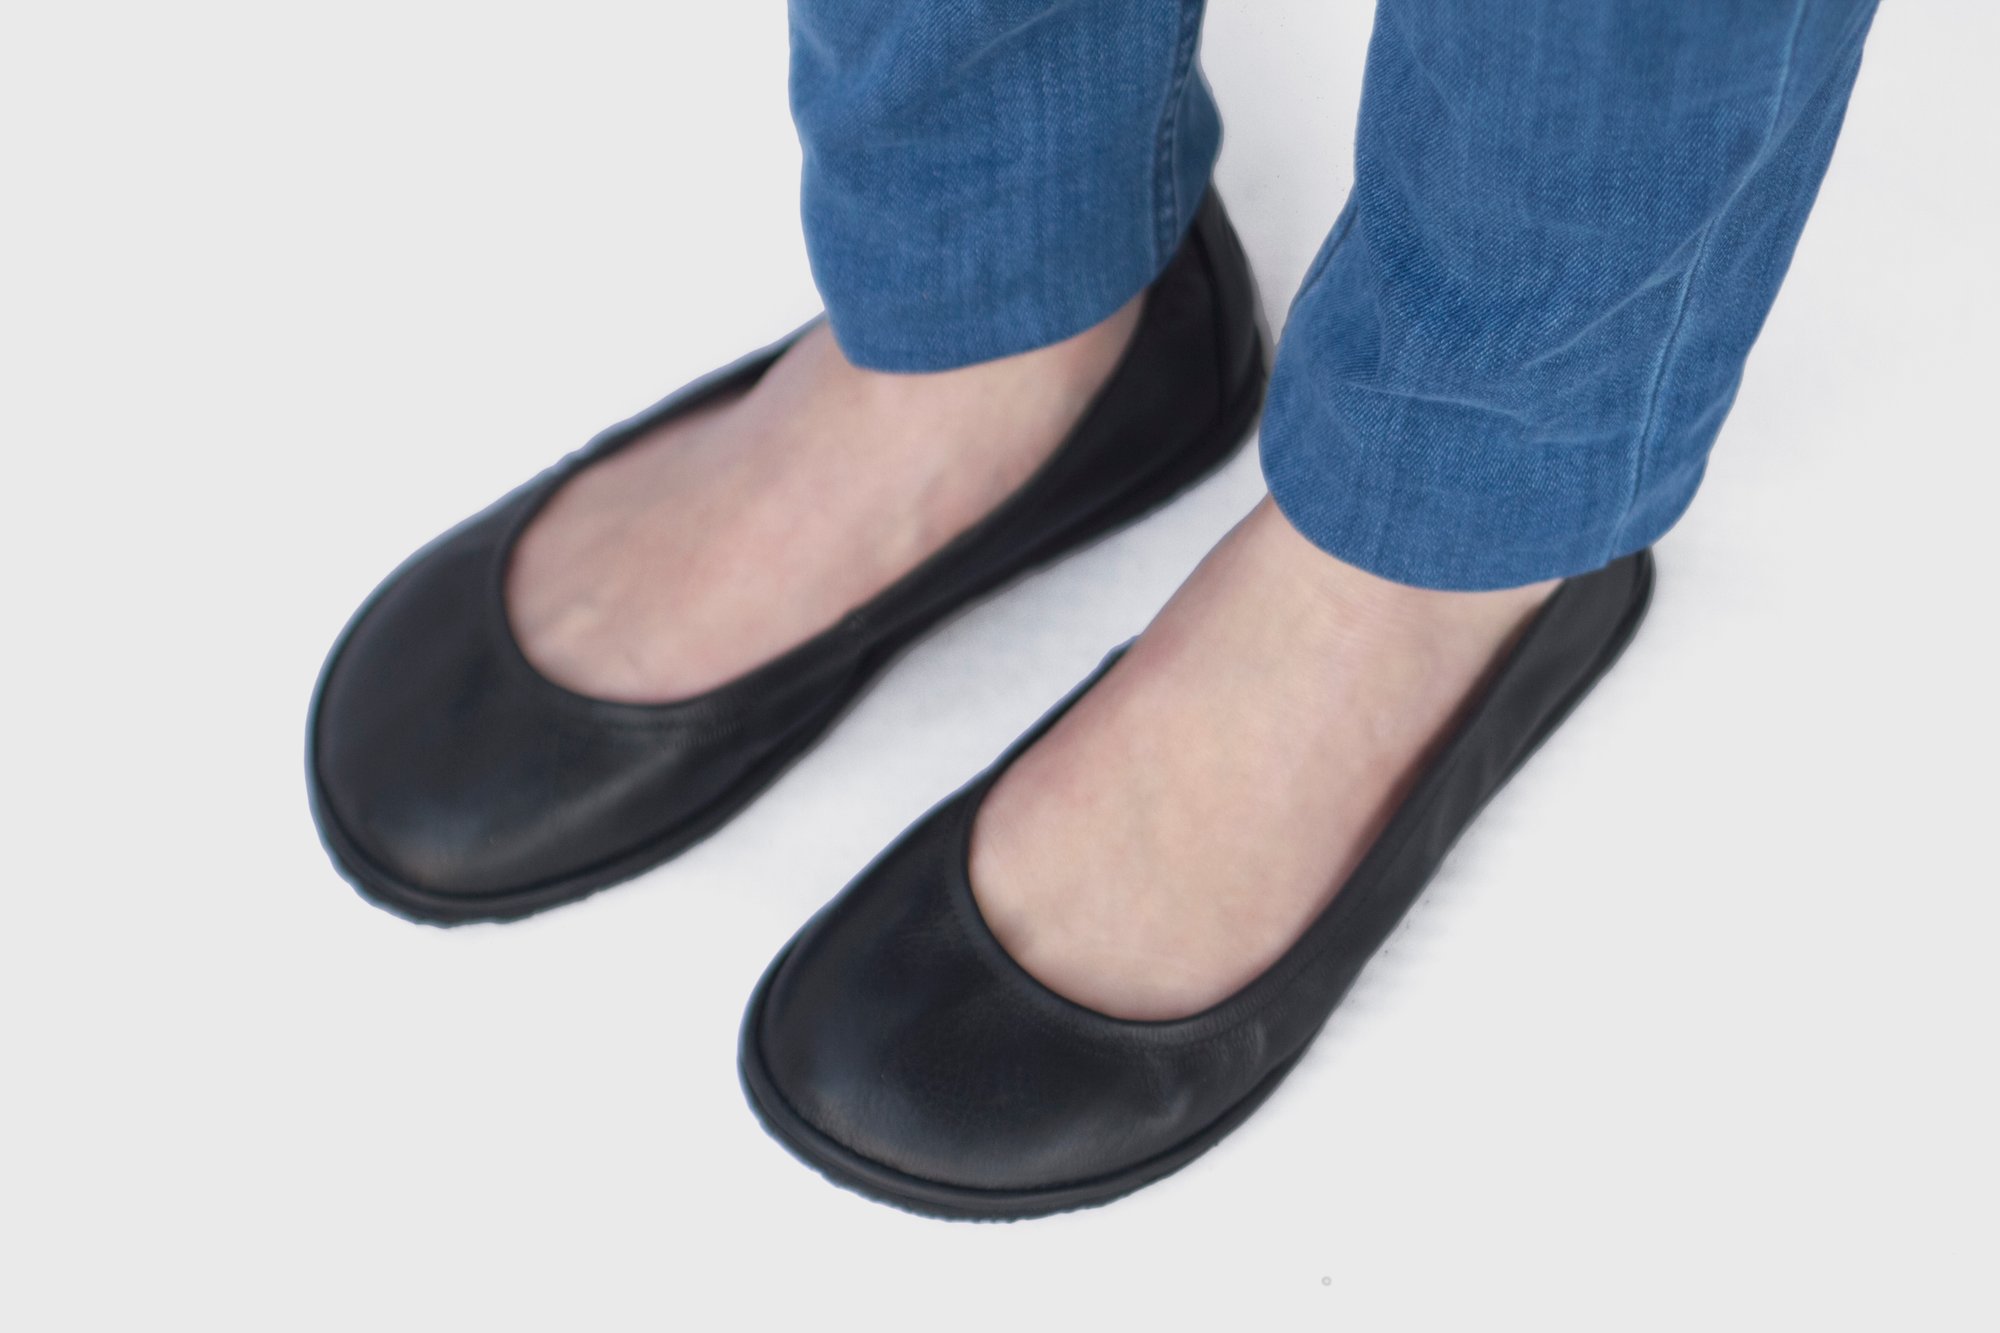 Veg-Tanned - Eko in Black Ballet flats | The Drifter Leather handmade shoes